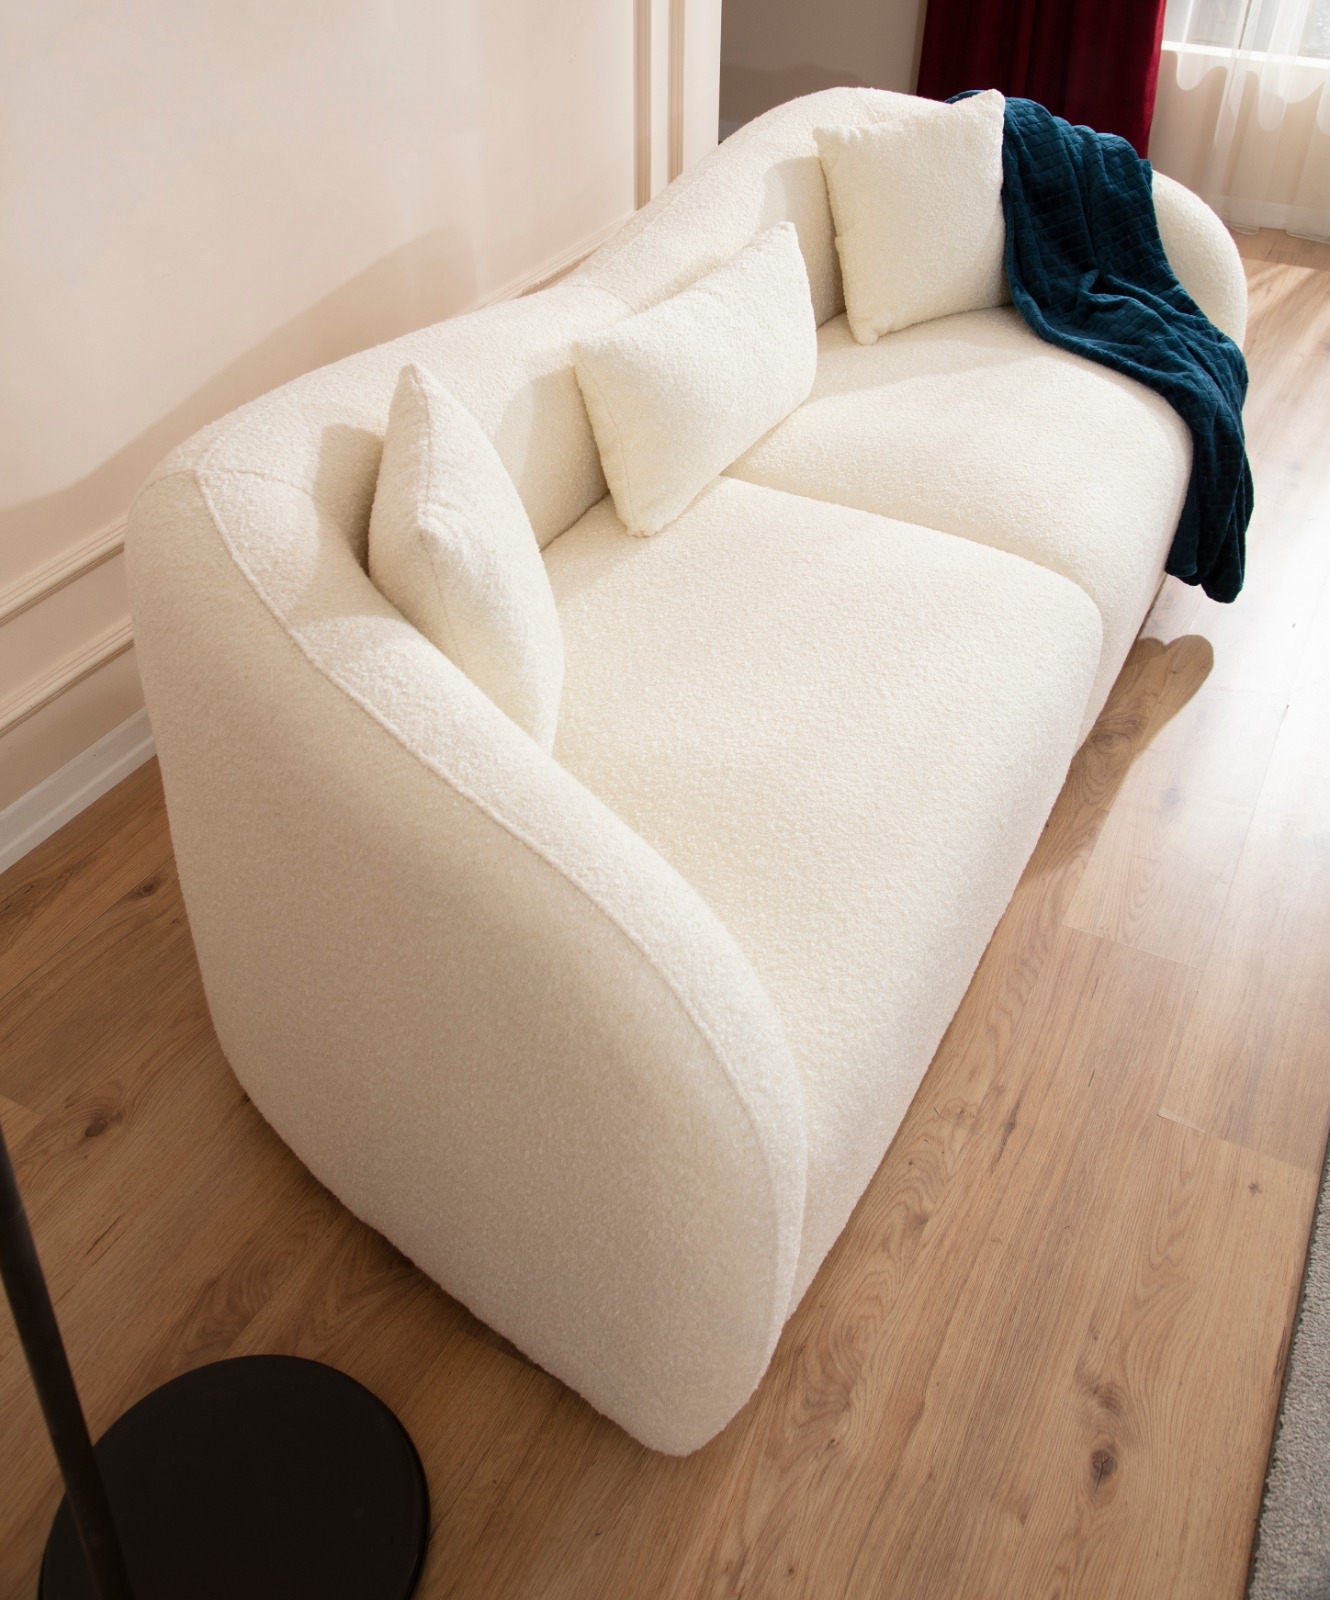 Napoli - 3-sæders sofa, Cream Bouclette